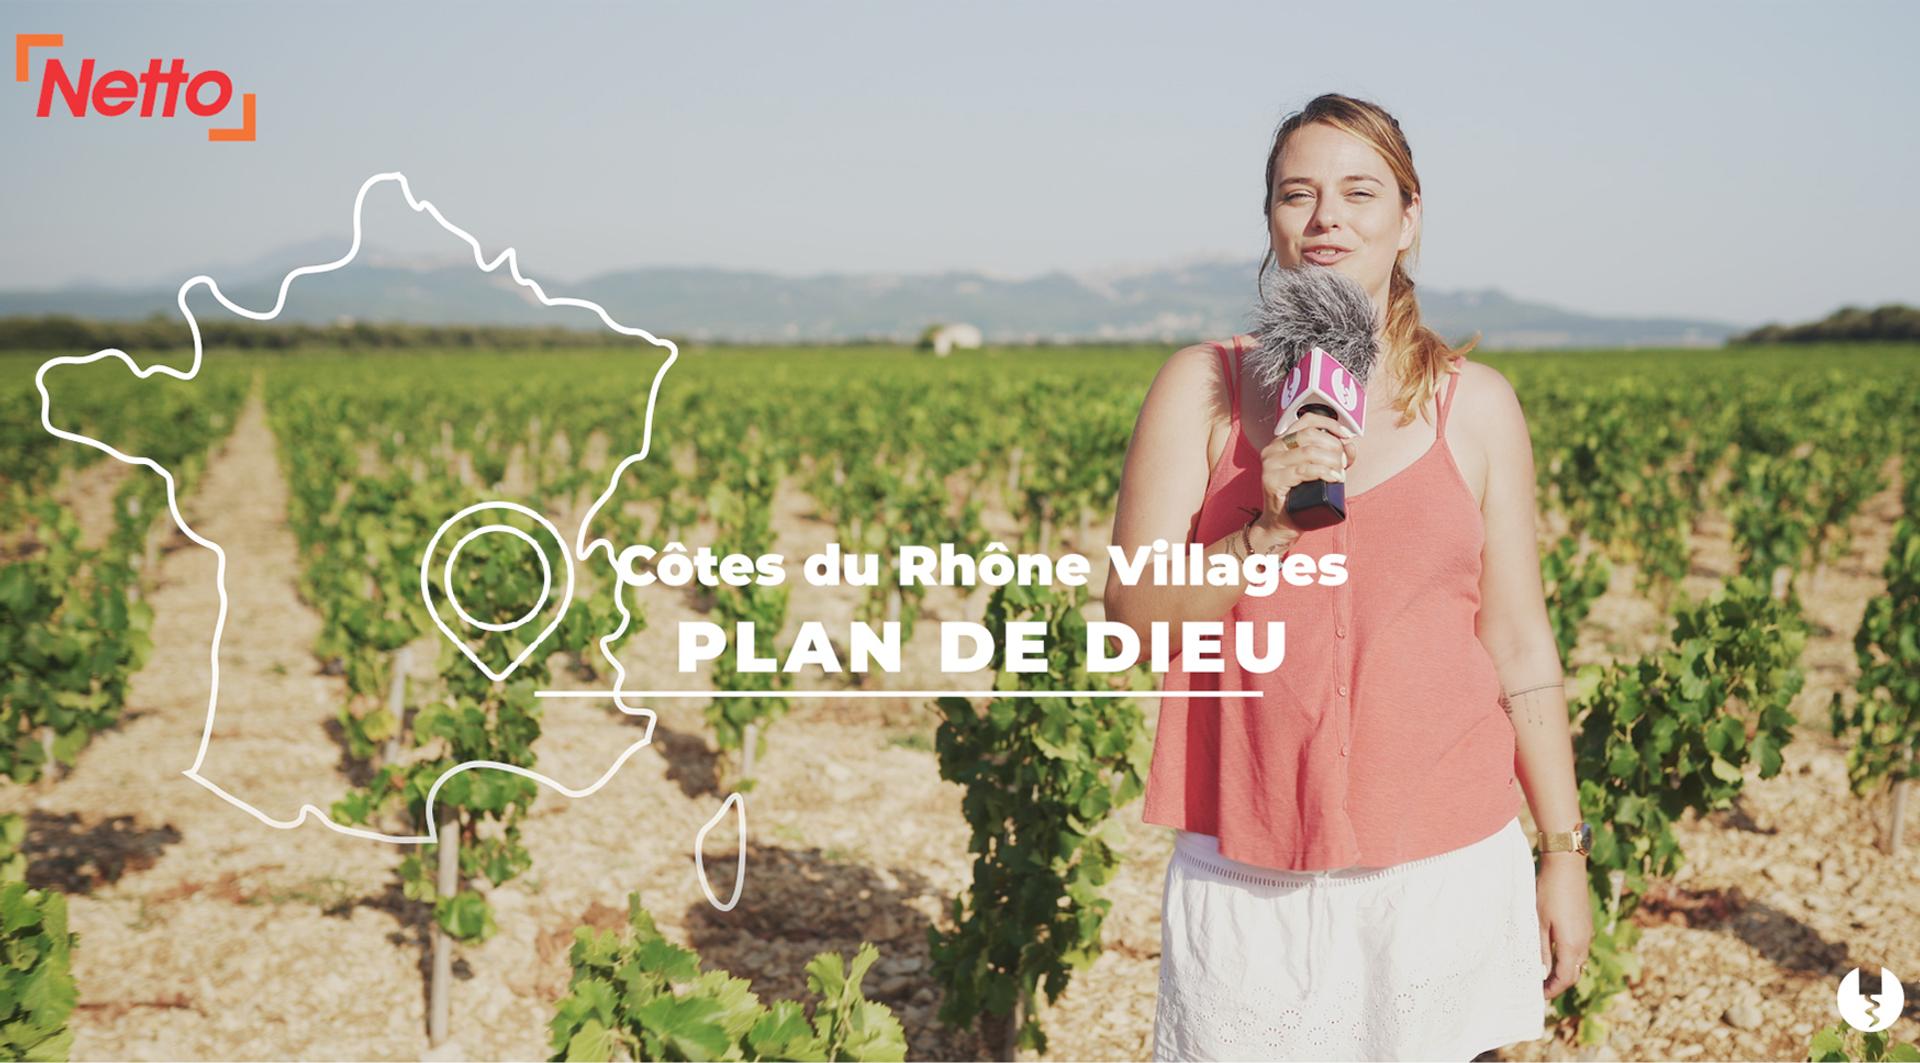 Foire aux vins NETTO 2020 - Etape 2 : Côtes de Rhône Plan de Dieu